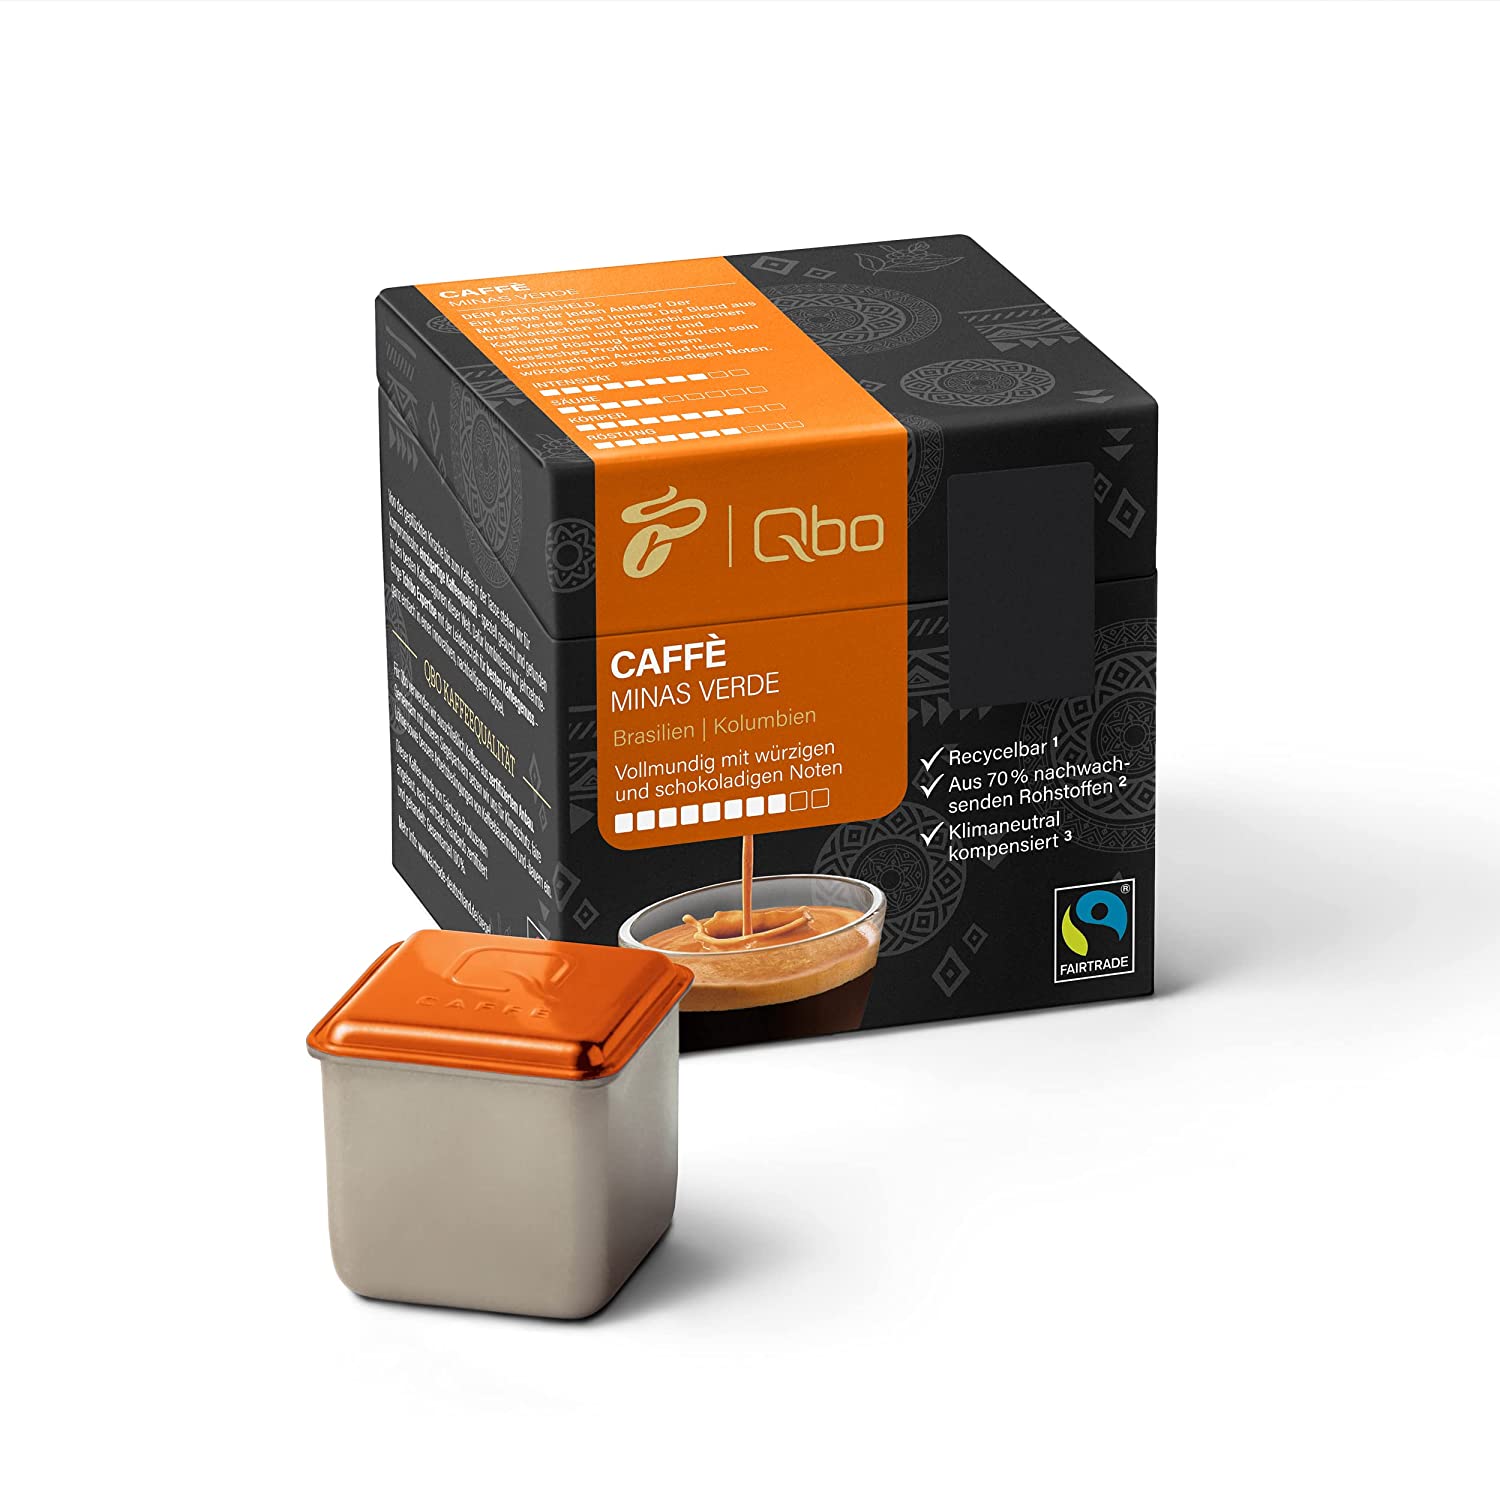 Tchibo Qbo Caffè Minas Verde Premium Kaffeekapseln, 8 Stück (Caffè, Intensität 8/10, vollmundig und würzig), nachhaltig, aus 70% nachwachsenden Rohstoffen & klimaneutral kompensiert